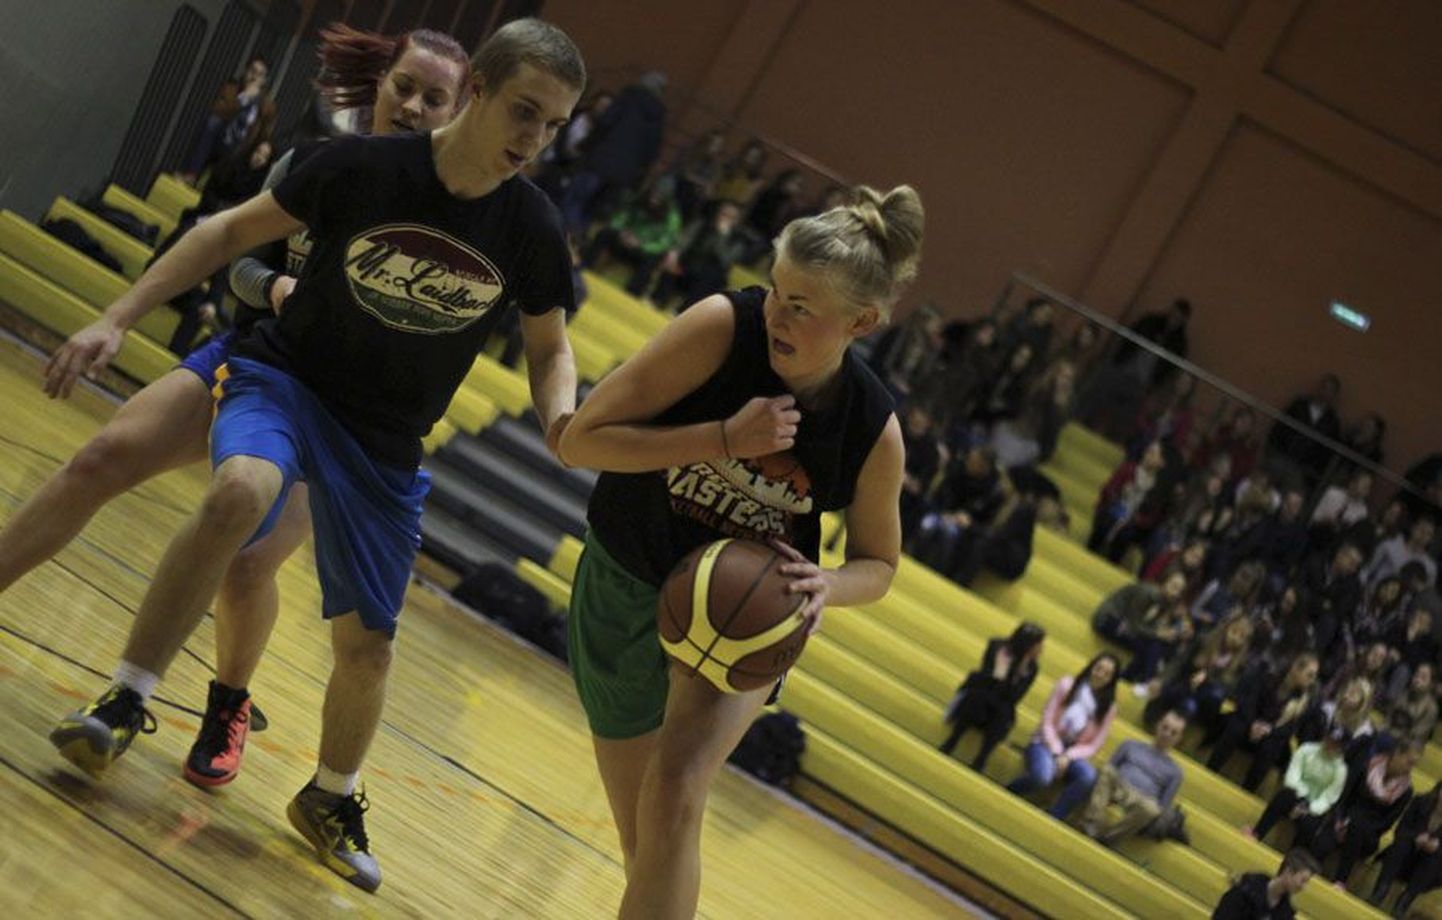 Viljandi avatud noortetoa korraldusel sai laupäeva õhtul Viljandi spordihoones teoks kuues «Öökossu» turniir. Seekord osales 11 võistkonda, nende seas ka üks tüdrukute võistkond.